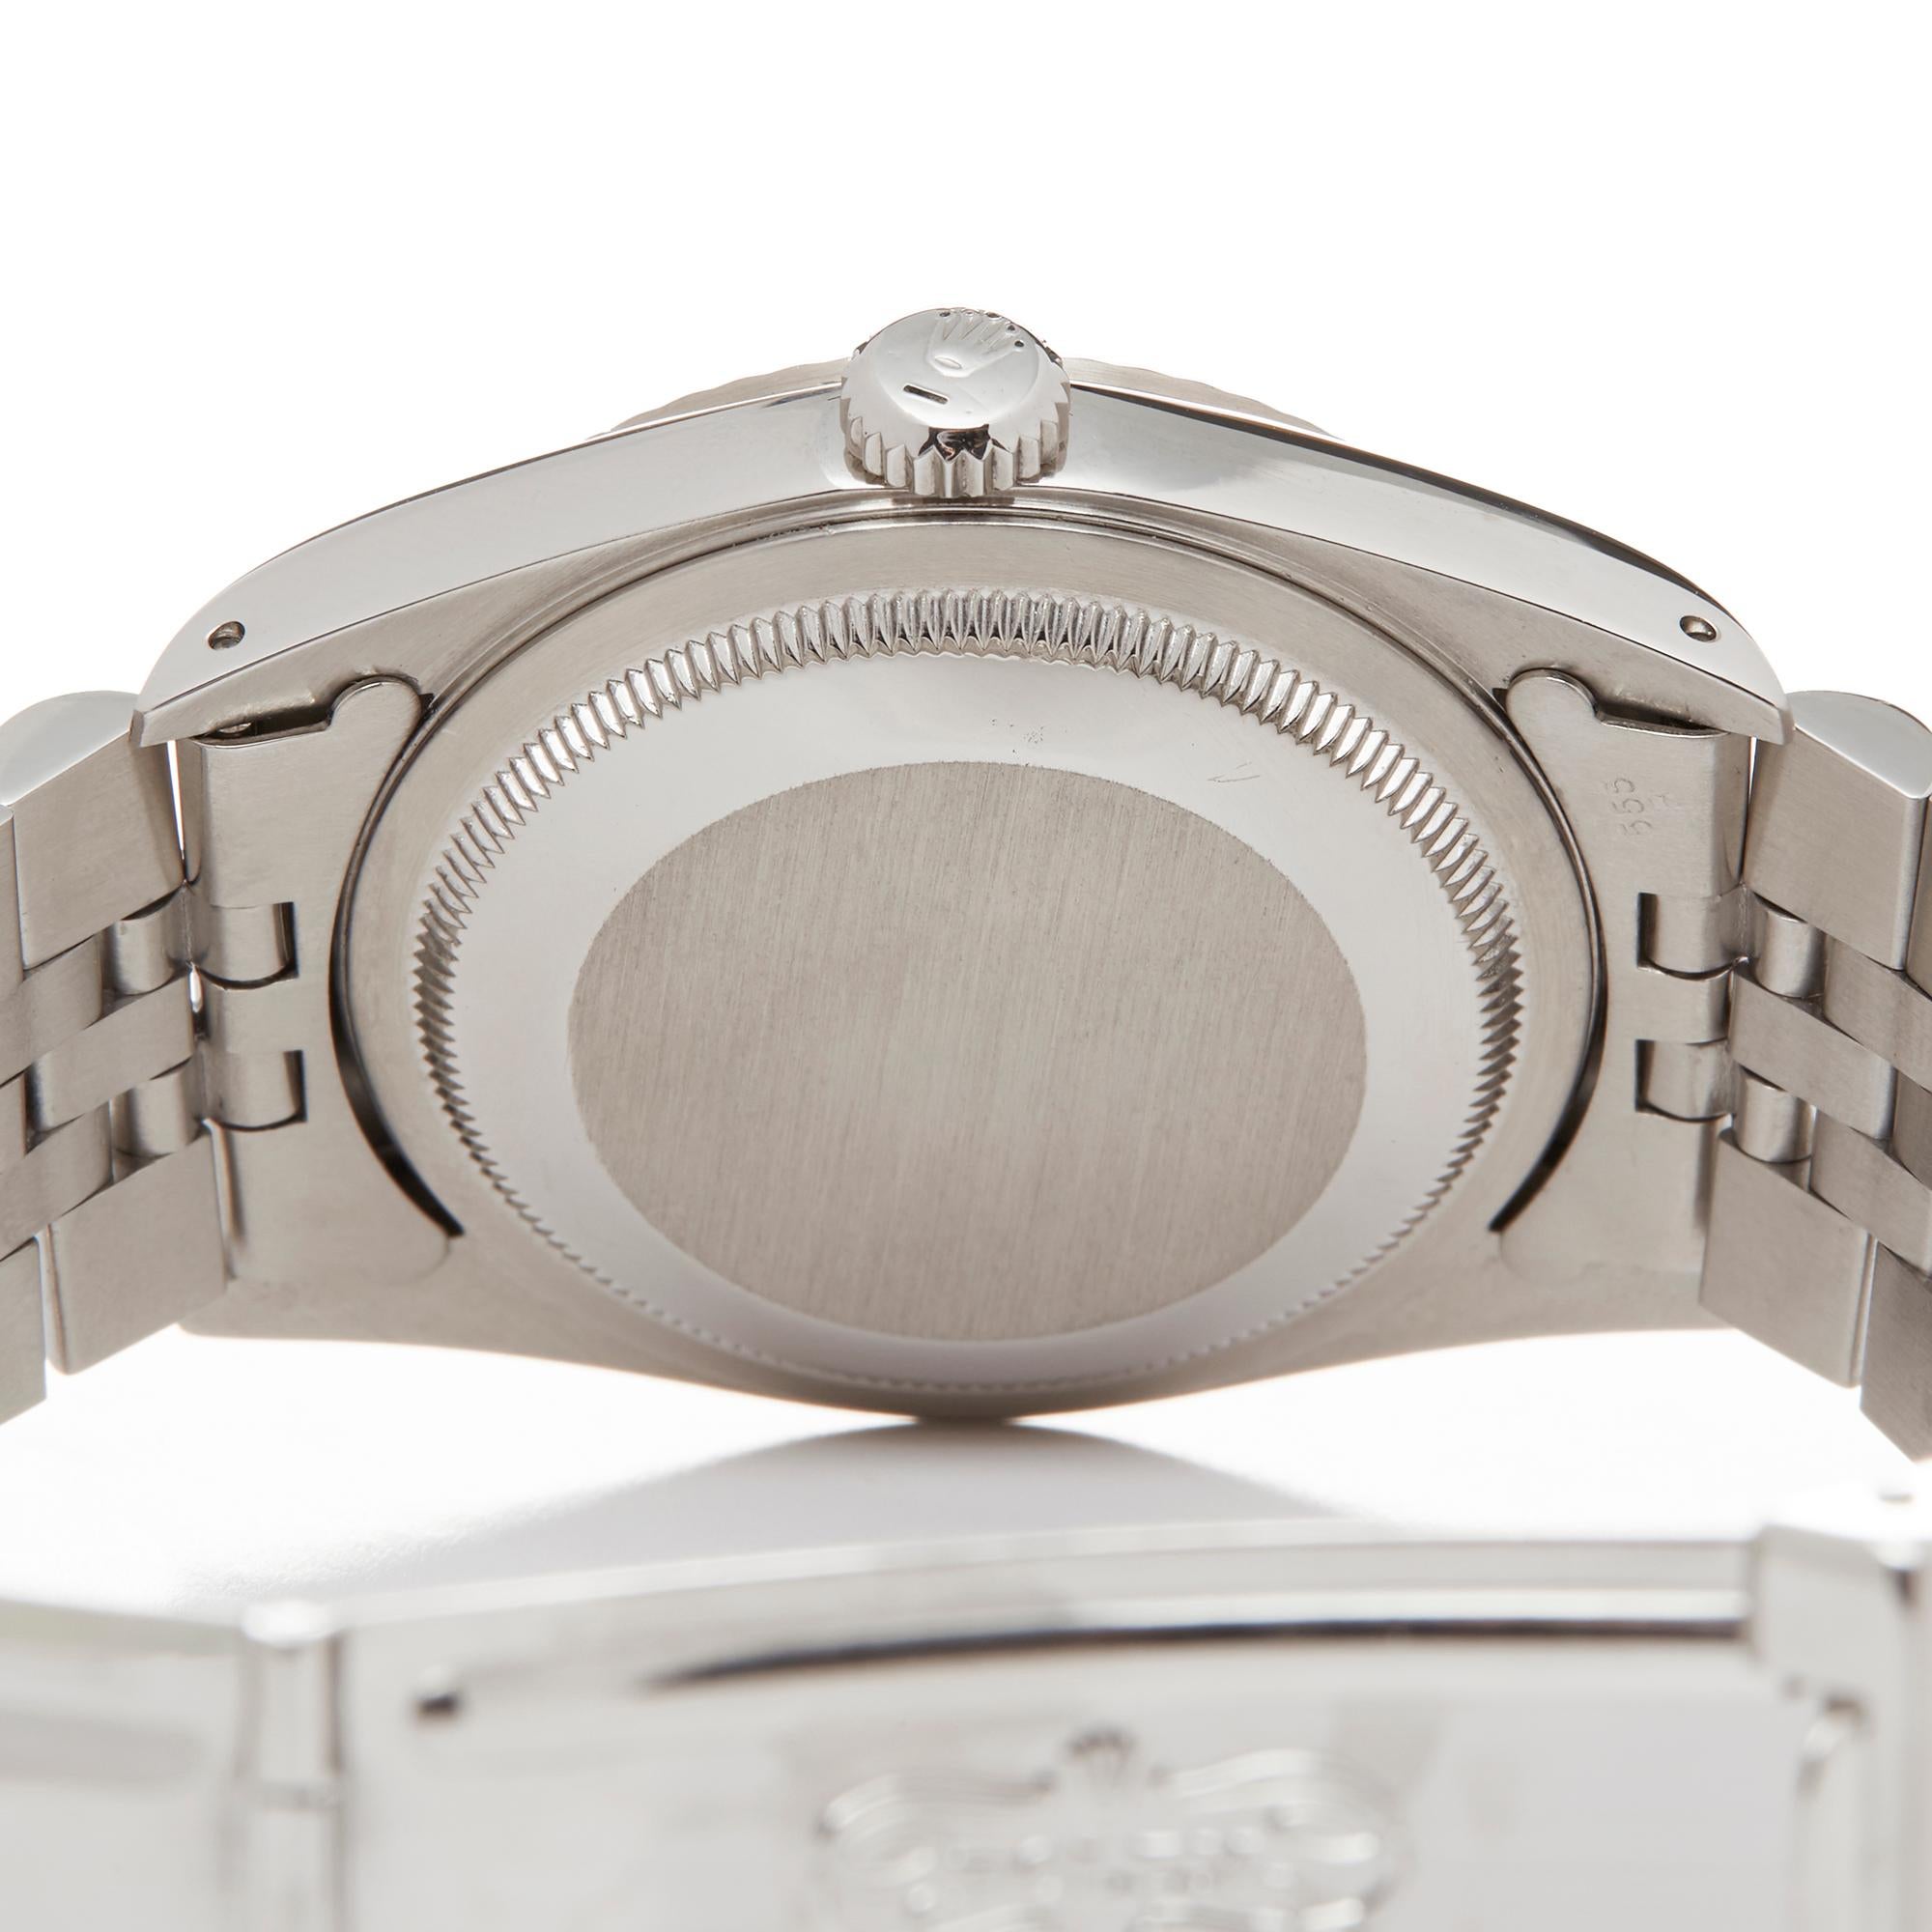 Rolex Datejust 36 Stainless Steel and 18 Karat White Gold 16234 Wristwatch 2